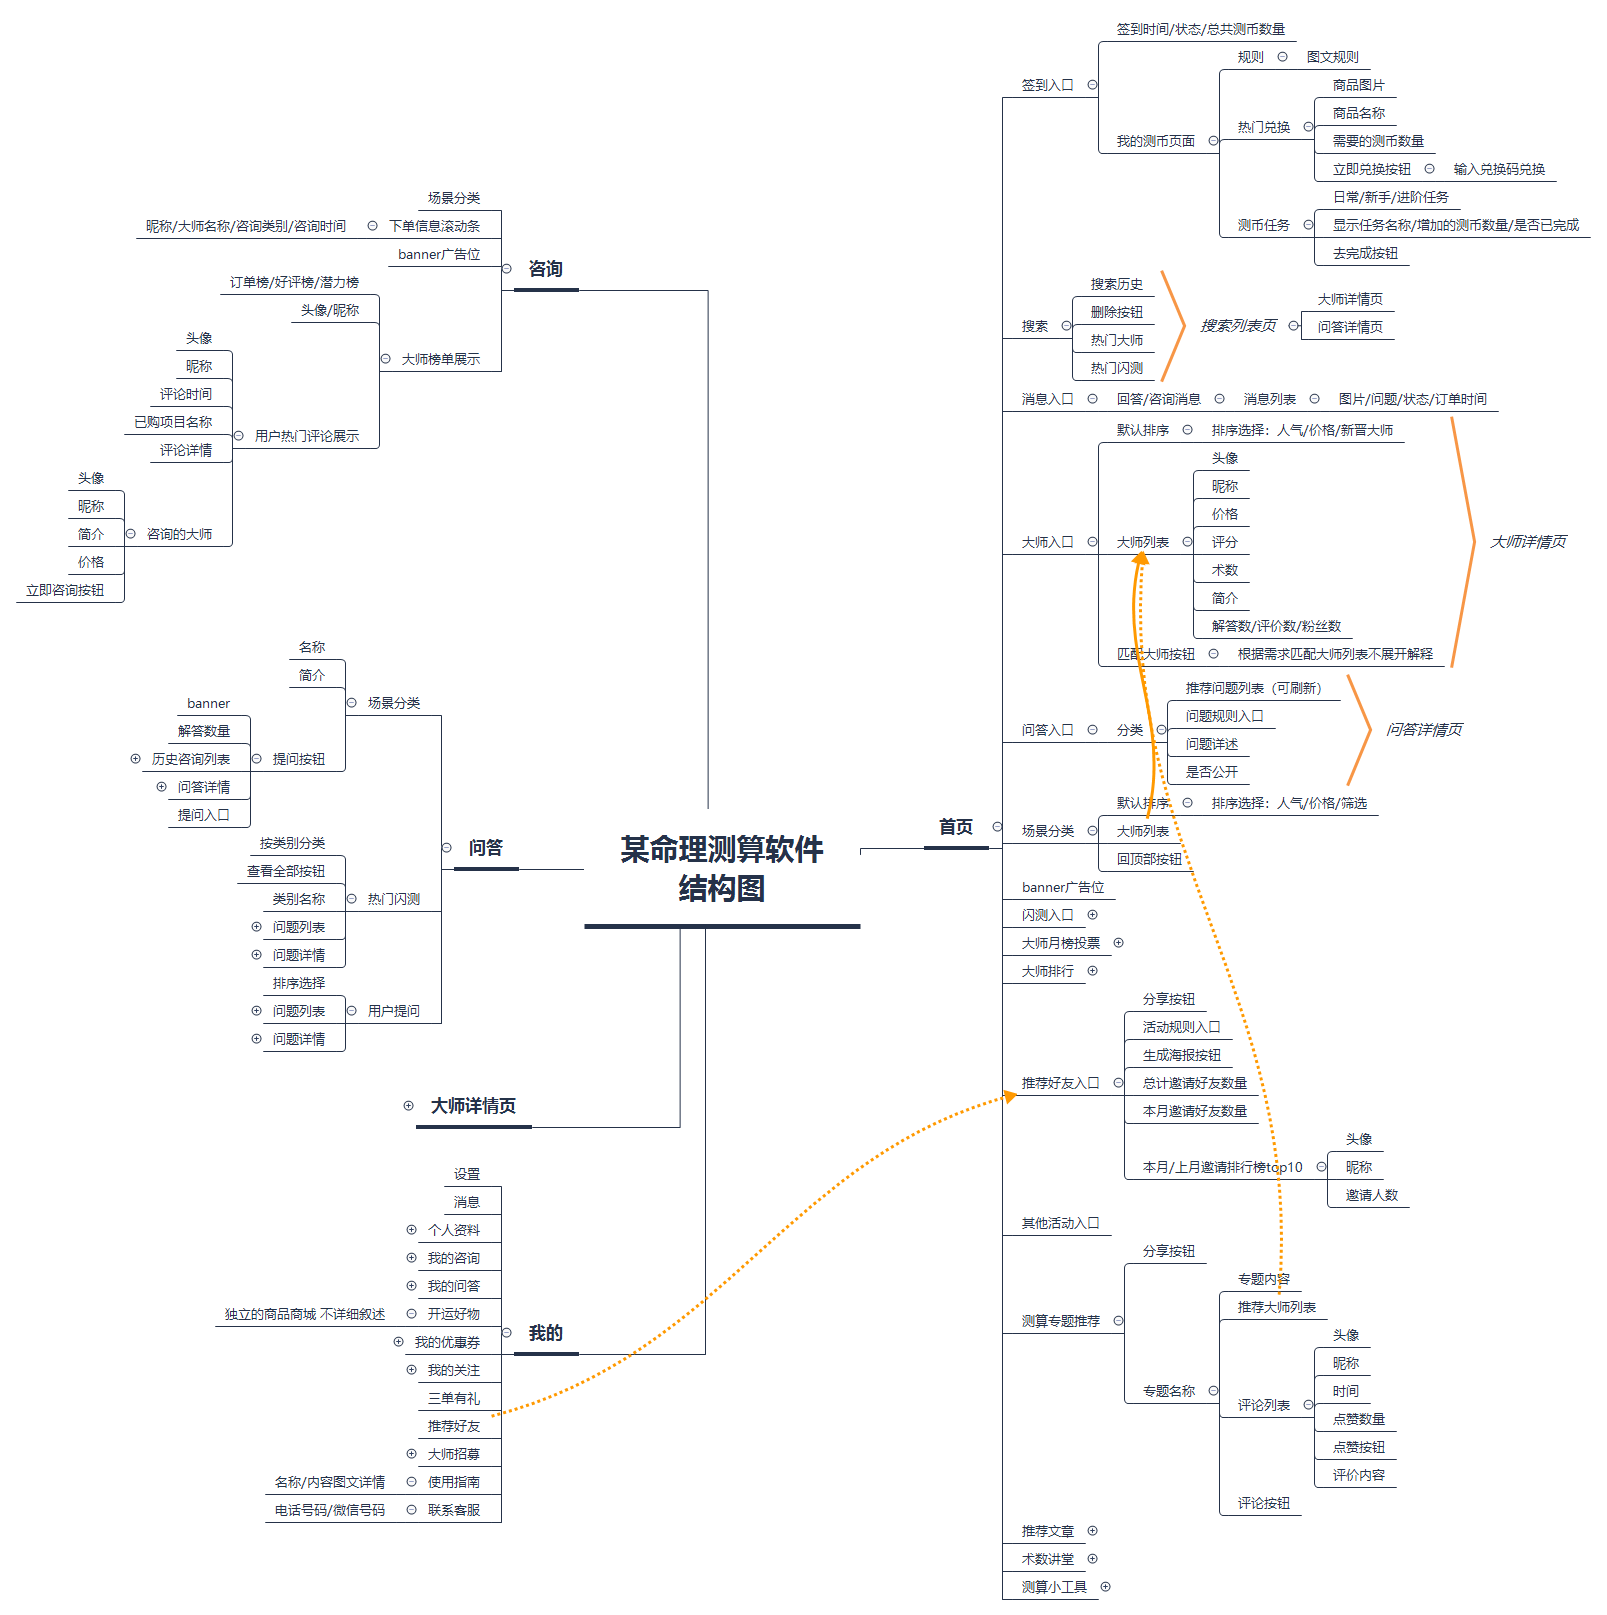 绘制产品功能结构图、产品信息结构图和产品结构图 - 图7